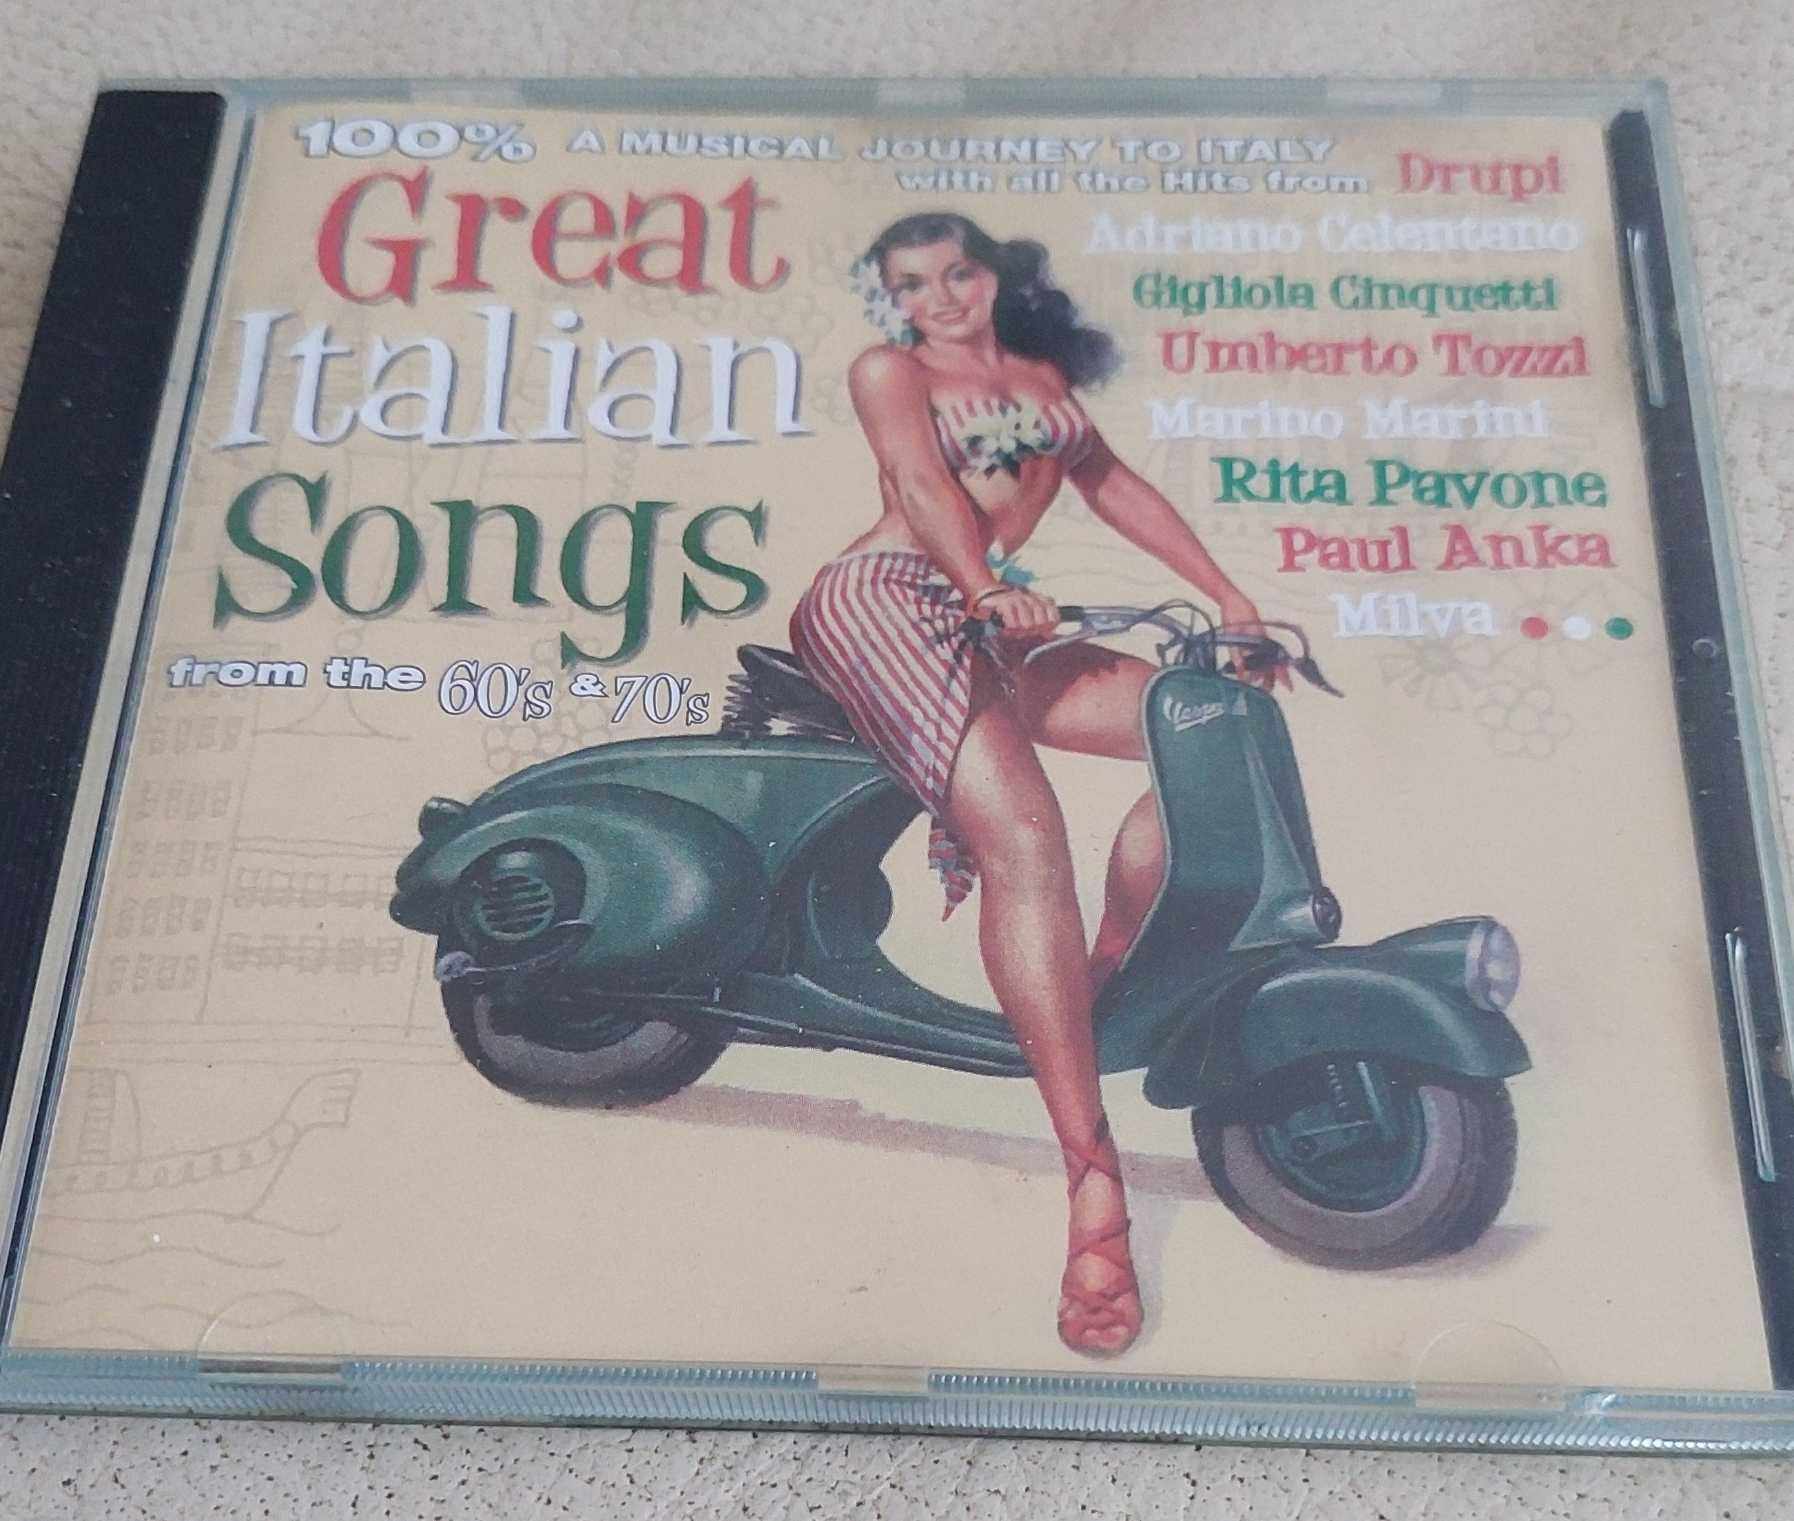 Great Italian Songs, kompilacja hitów z 60's i 70's, płyta CD